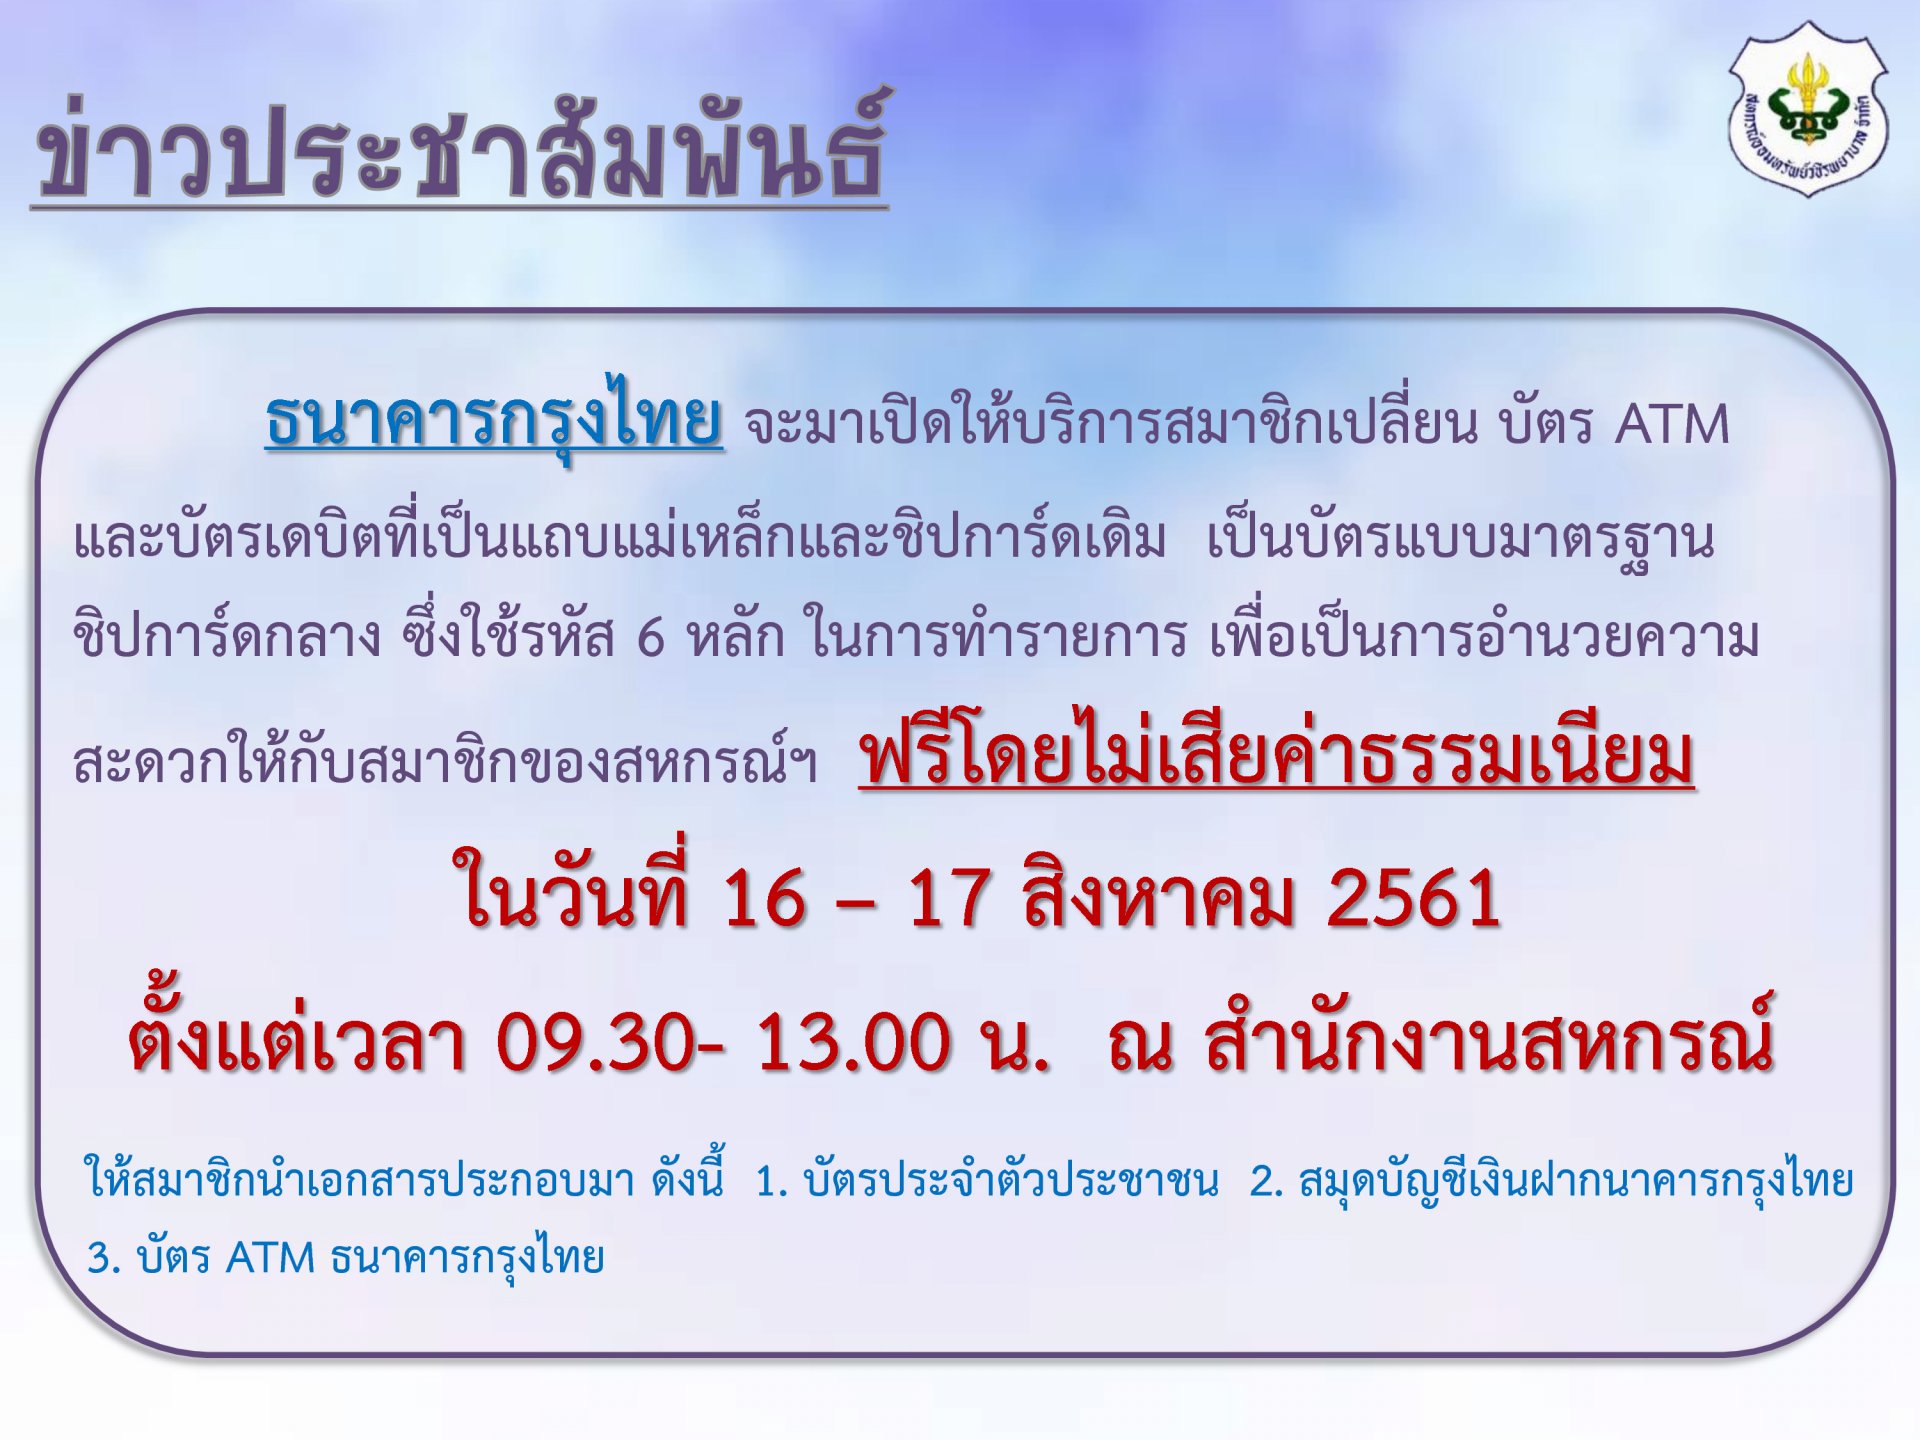 ธนาคารกรุงไทยจะมาเปิดให้บริการสมาชิก